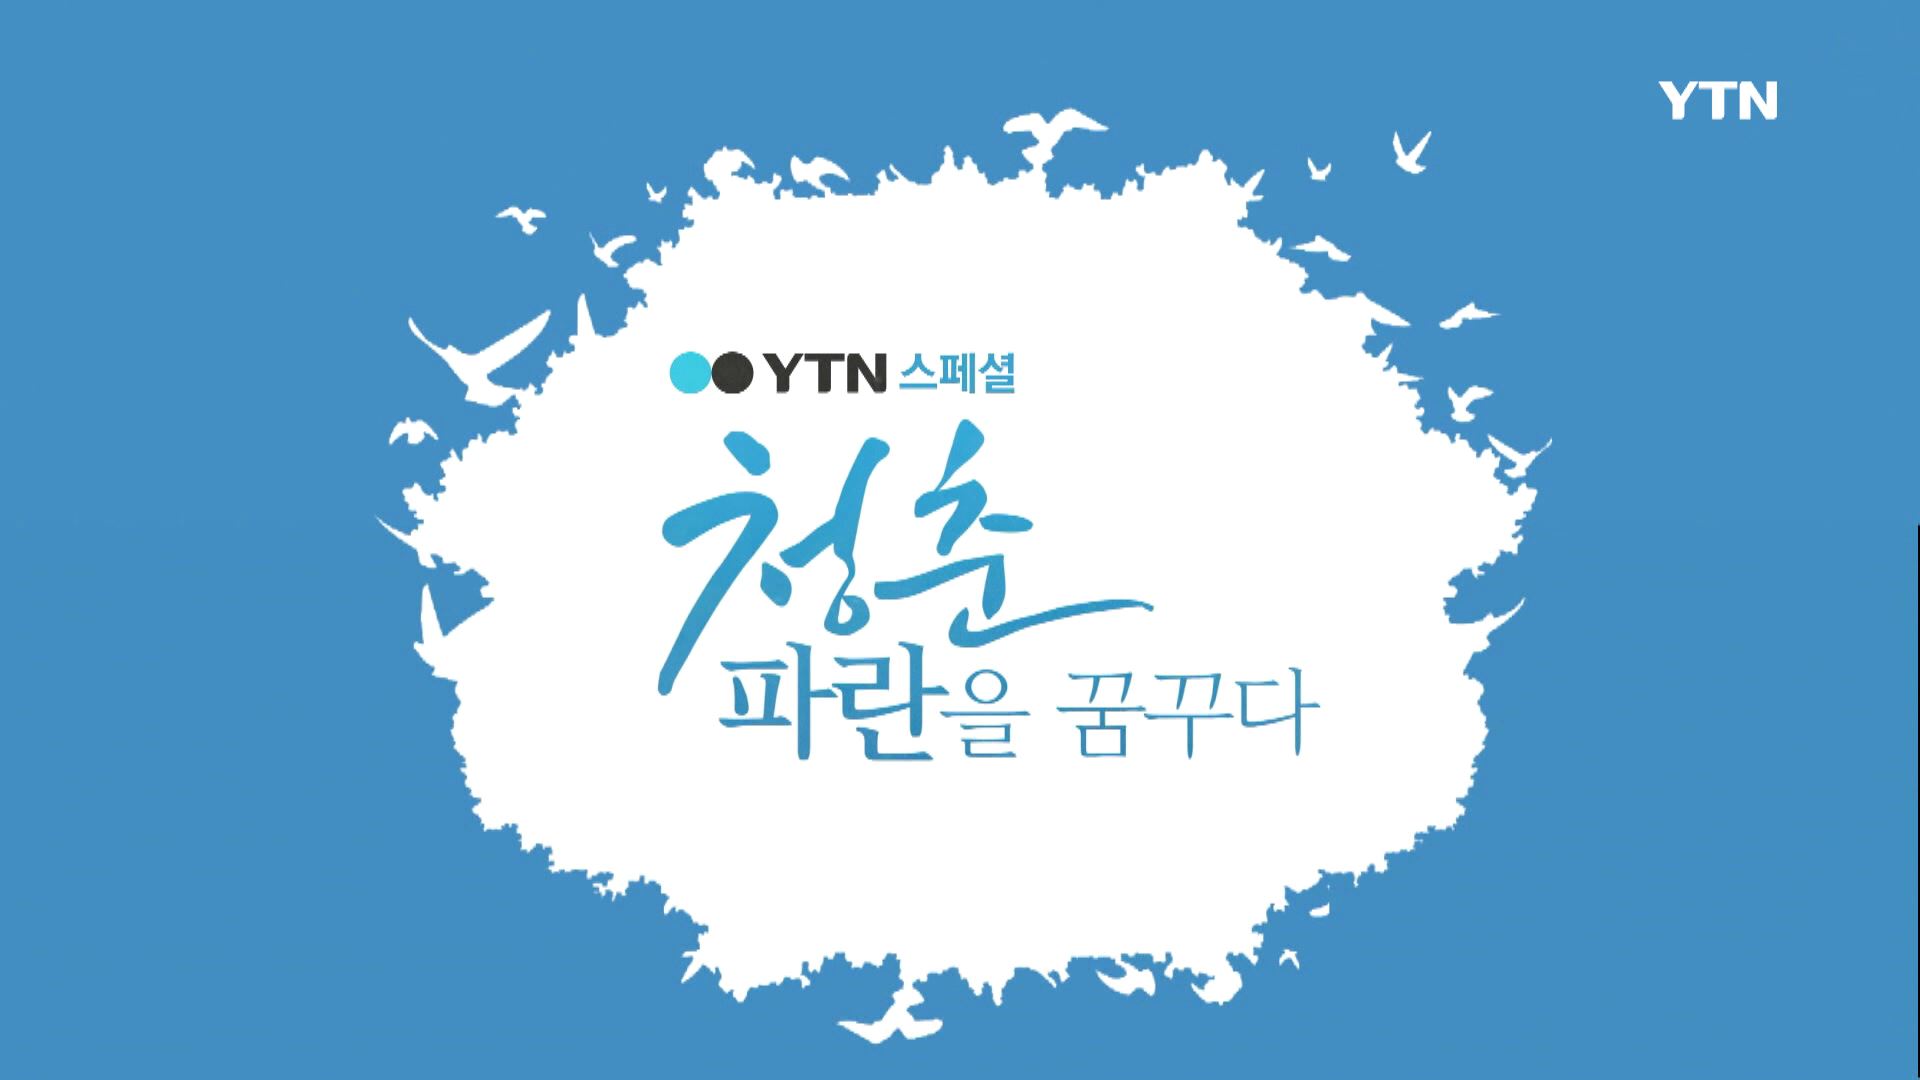 [16.06.27] YTN, 파란학기 소개 특집프로그램 방송